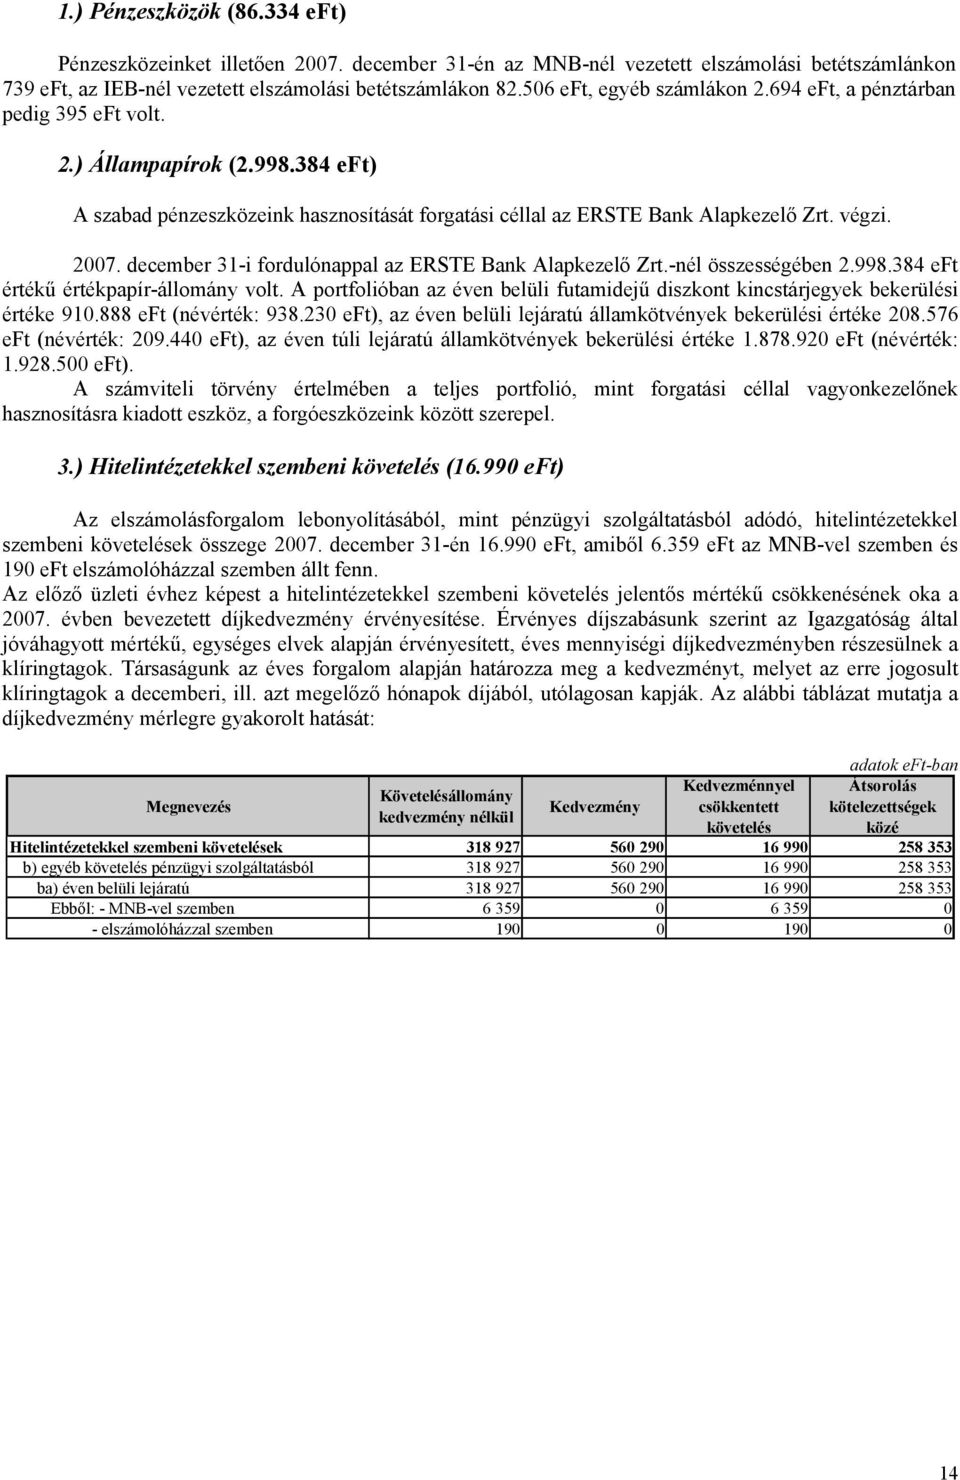 december 31-i fordulónappal az ERSTE Bank Alapkezelő Zrt.-nél összességében 2.998.384 eft értékű értékpapír-állomány volt.